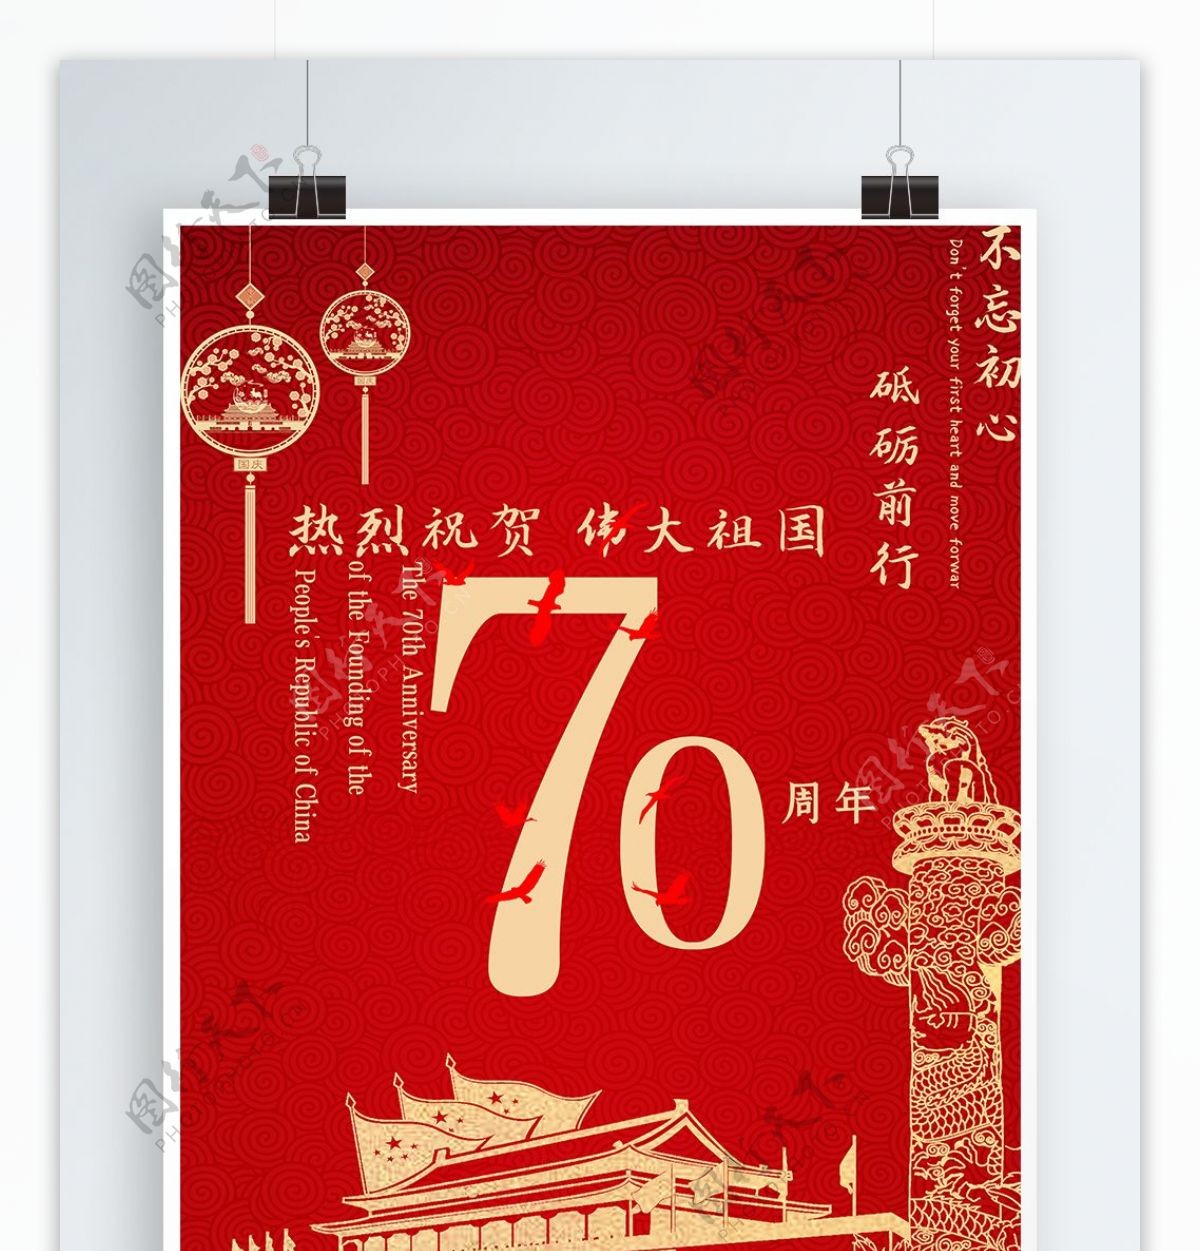 新中国成立70周年海报